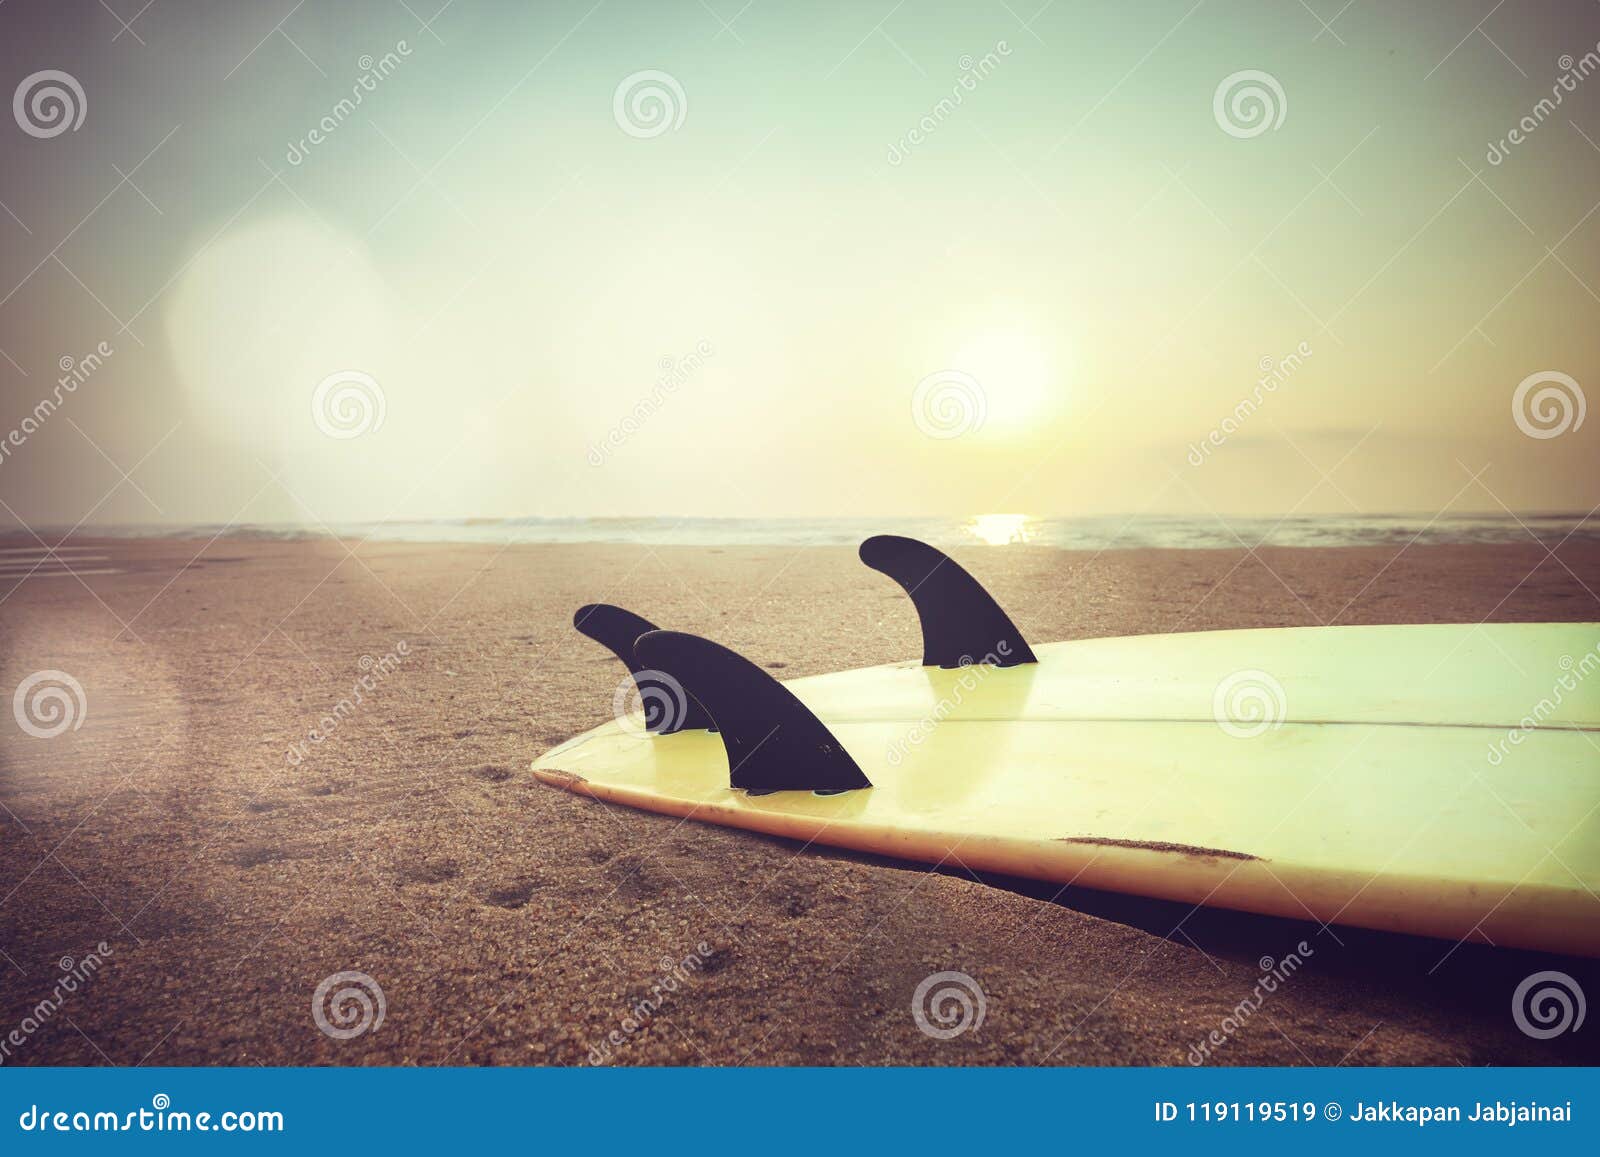 surfboard on beach at sunset